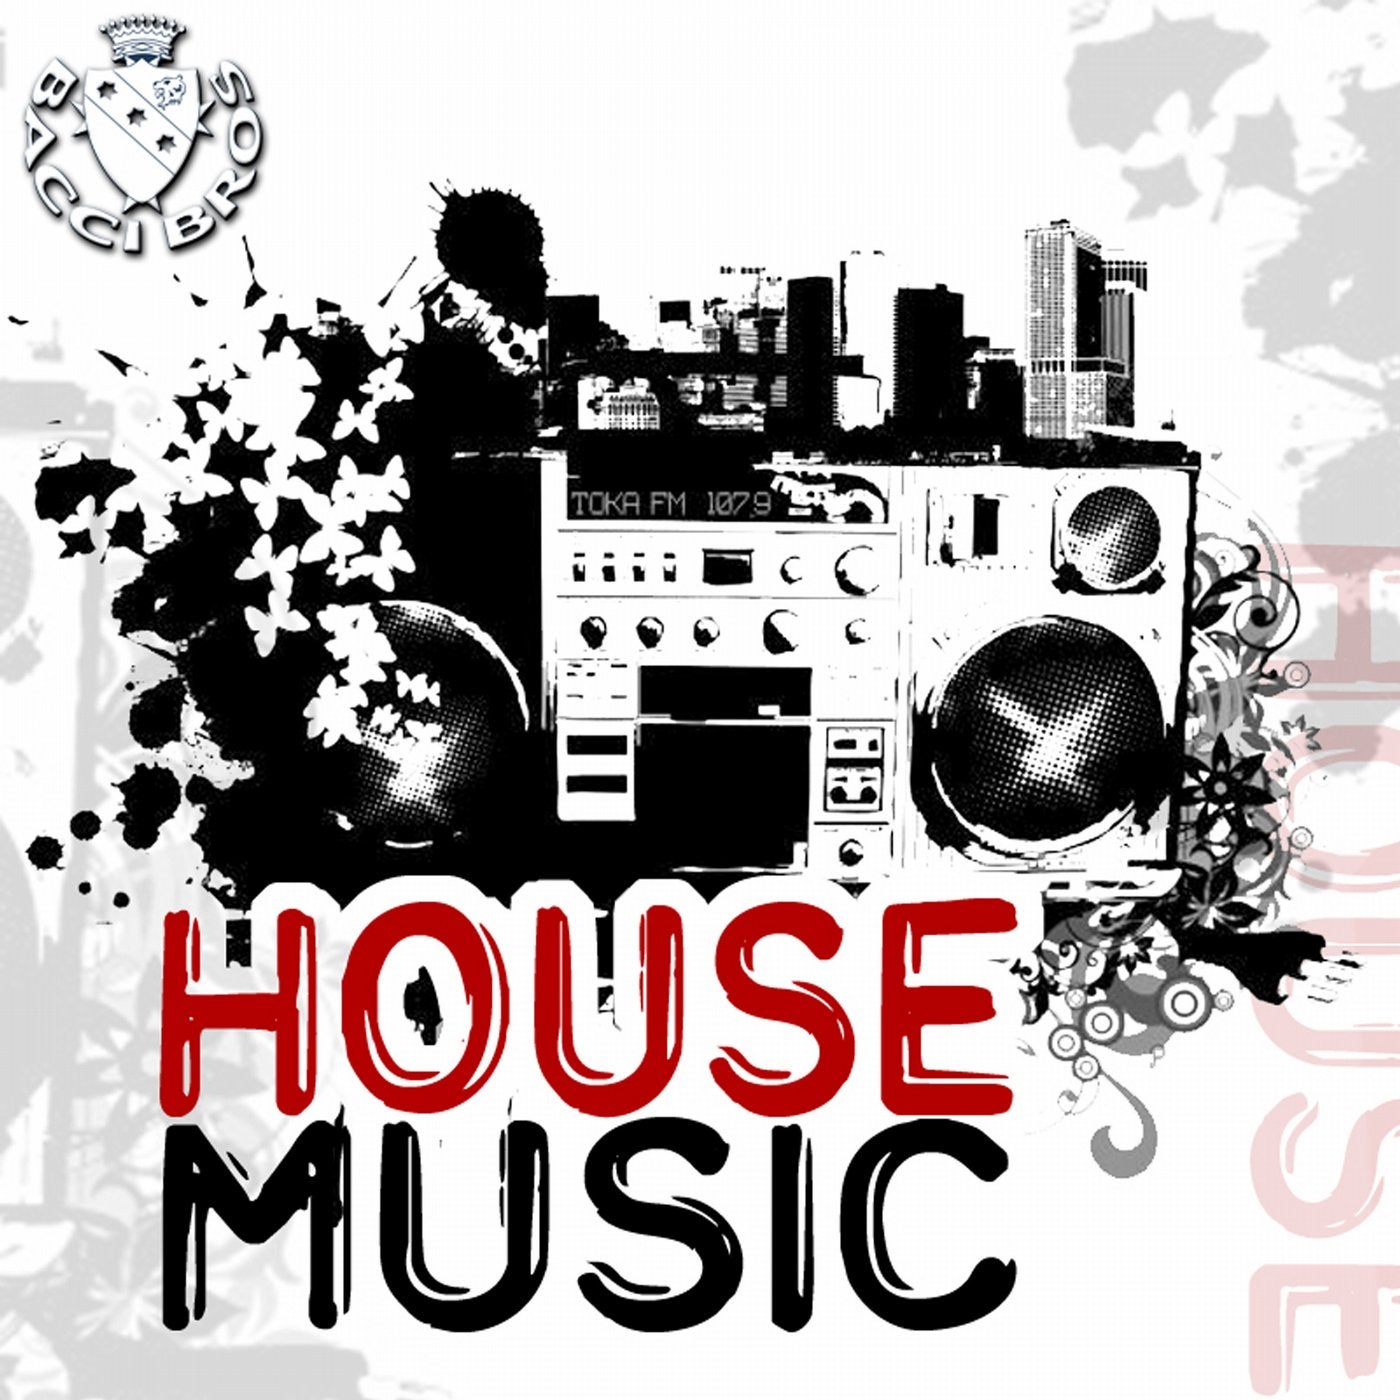 Музыка house music. Музыкальный стиль House. House Music картинки. Хаус Жанр. Музыкальный стиль Хаус в рисунках.